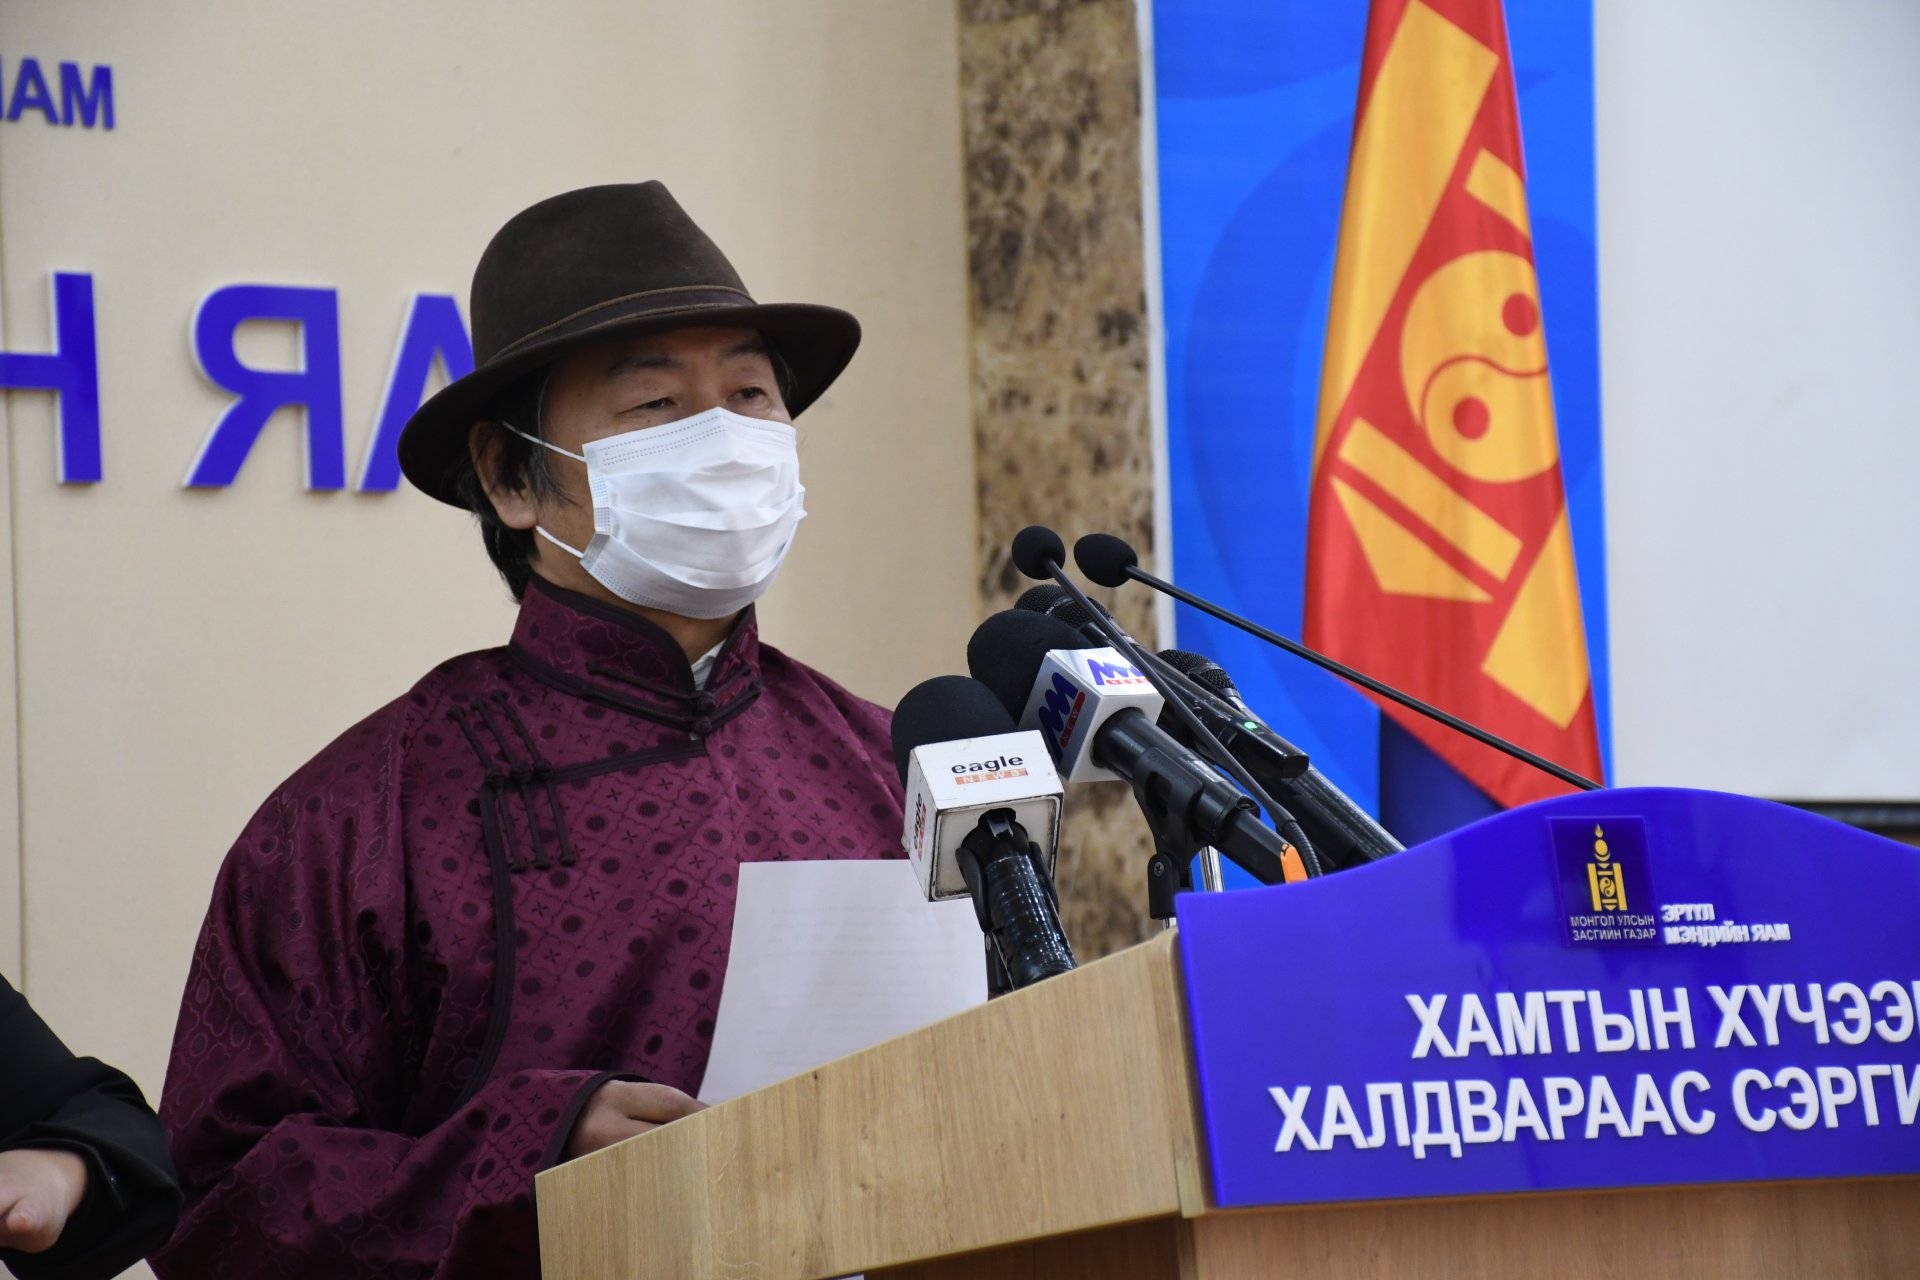 Монгол Улсад онош батлагдсан 227 тохиолдол байгаагаас 200 тохиолдол нь эдгэрсэн